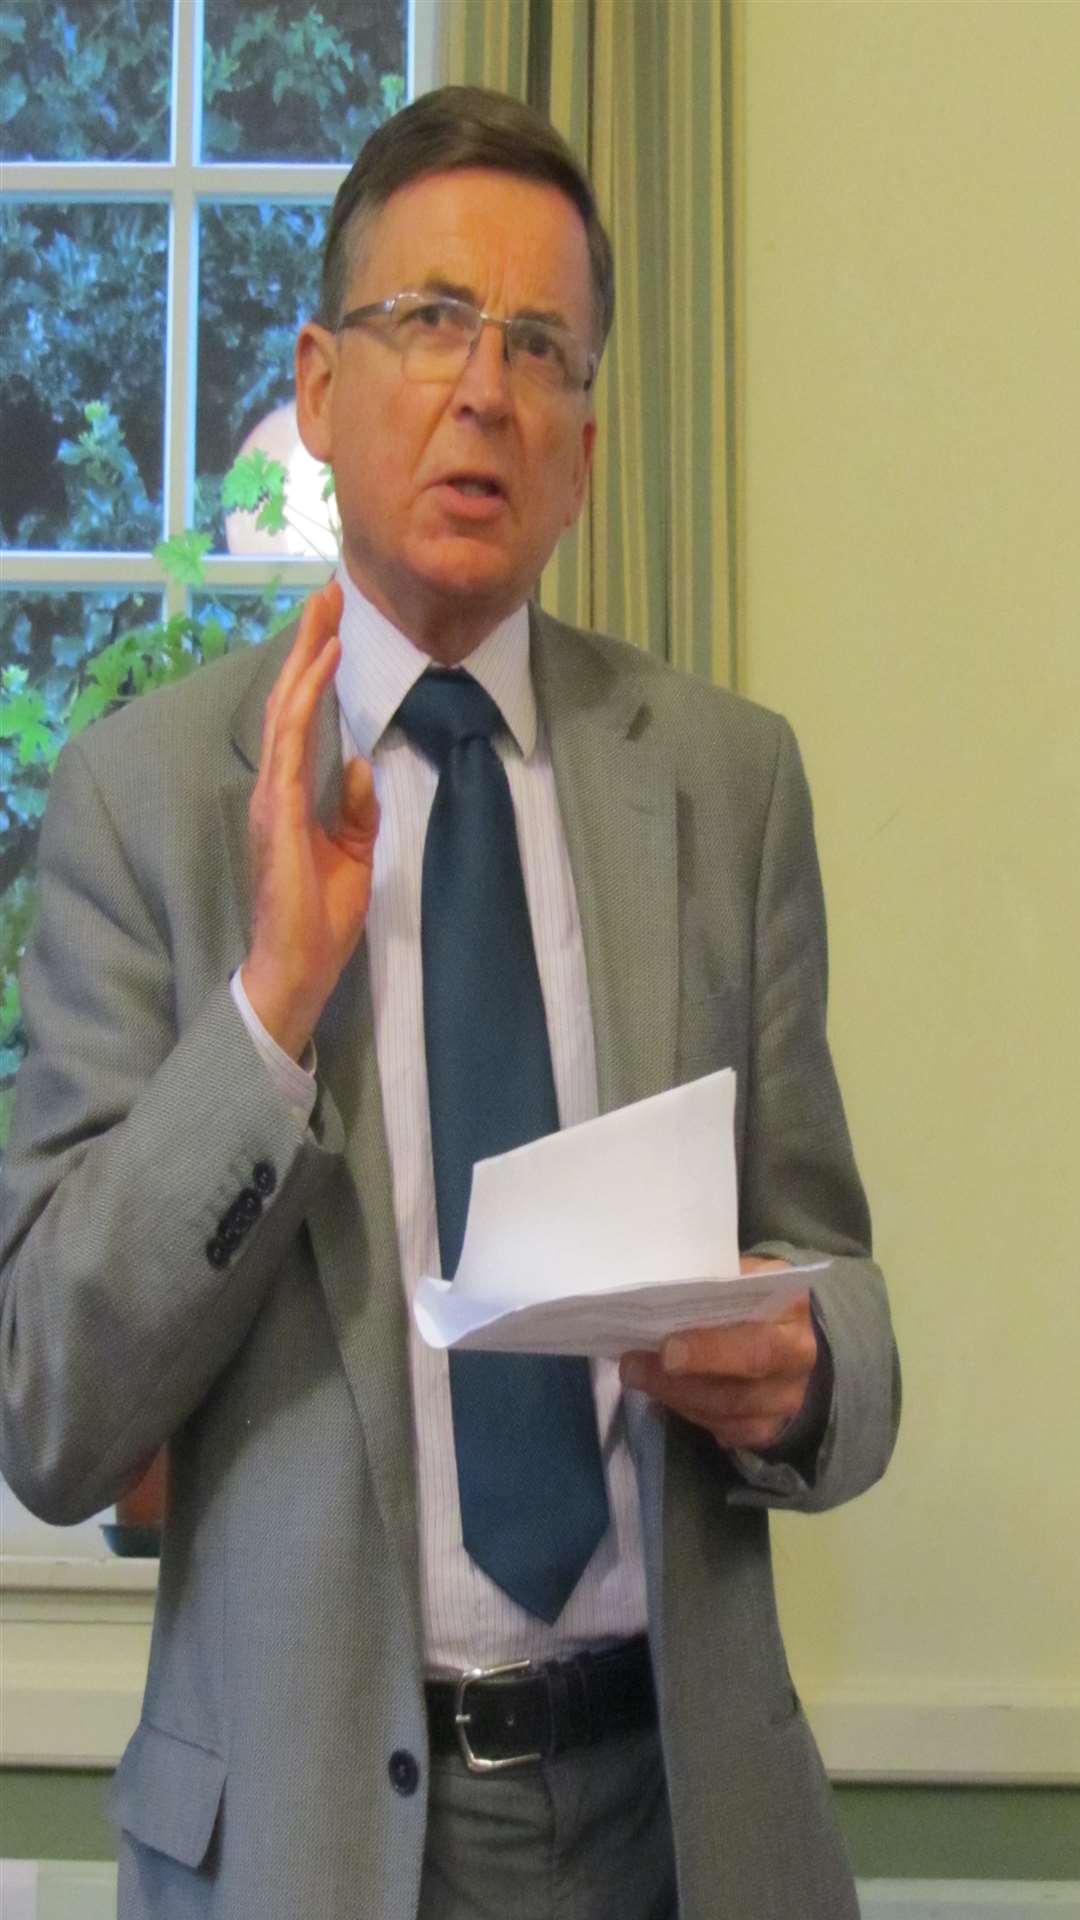 Cllr Graham Gibbens, KCC cabinet member for adult social care